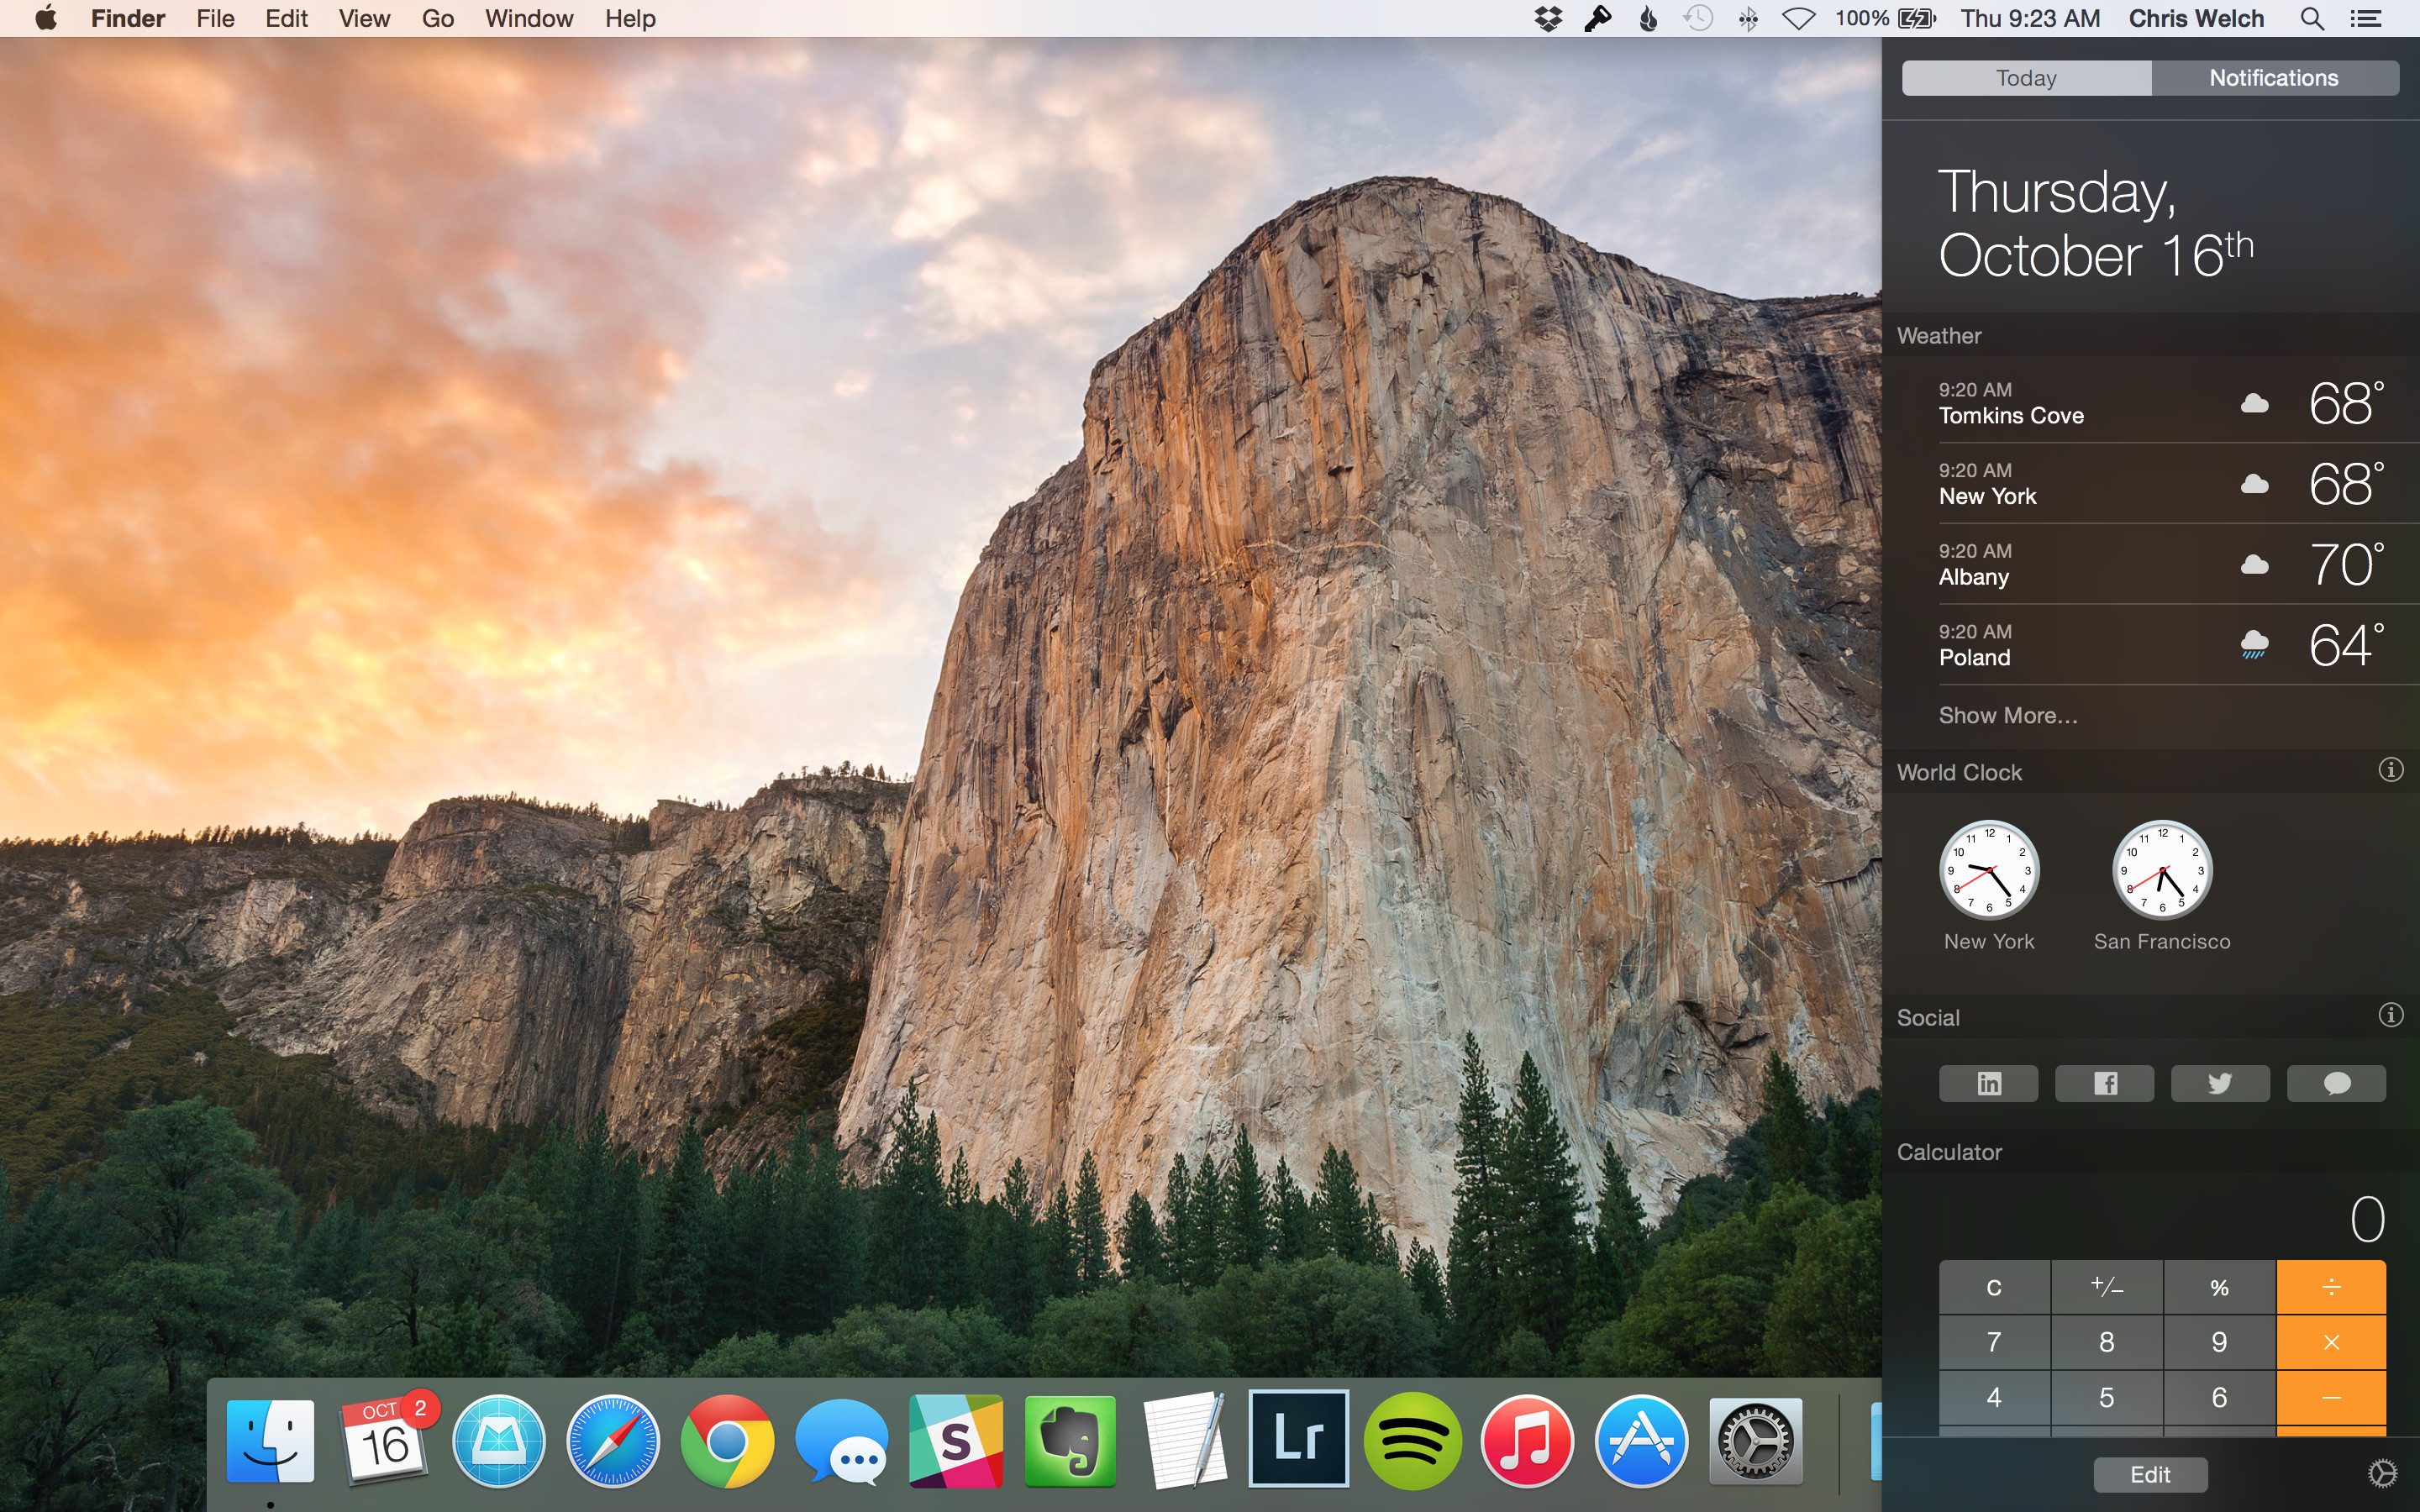 Download Mac Os Yosemite 10.10